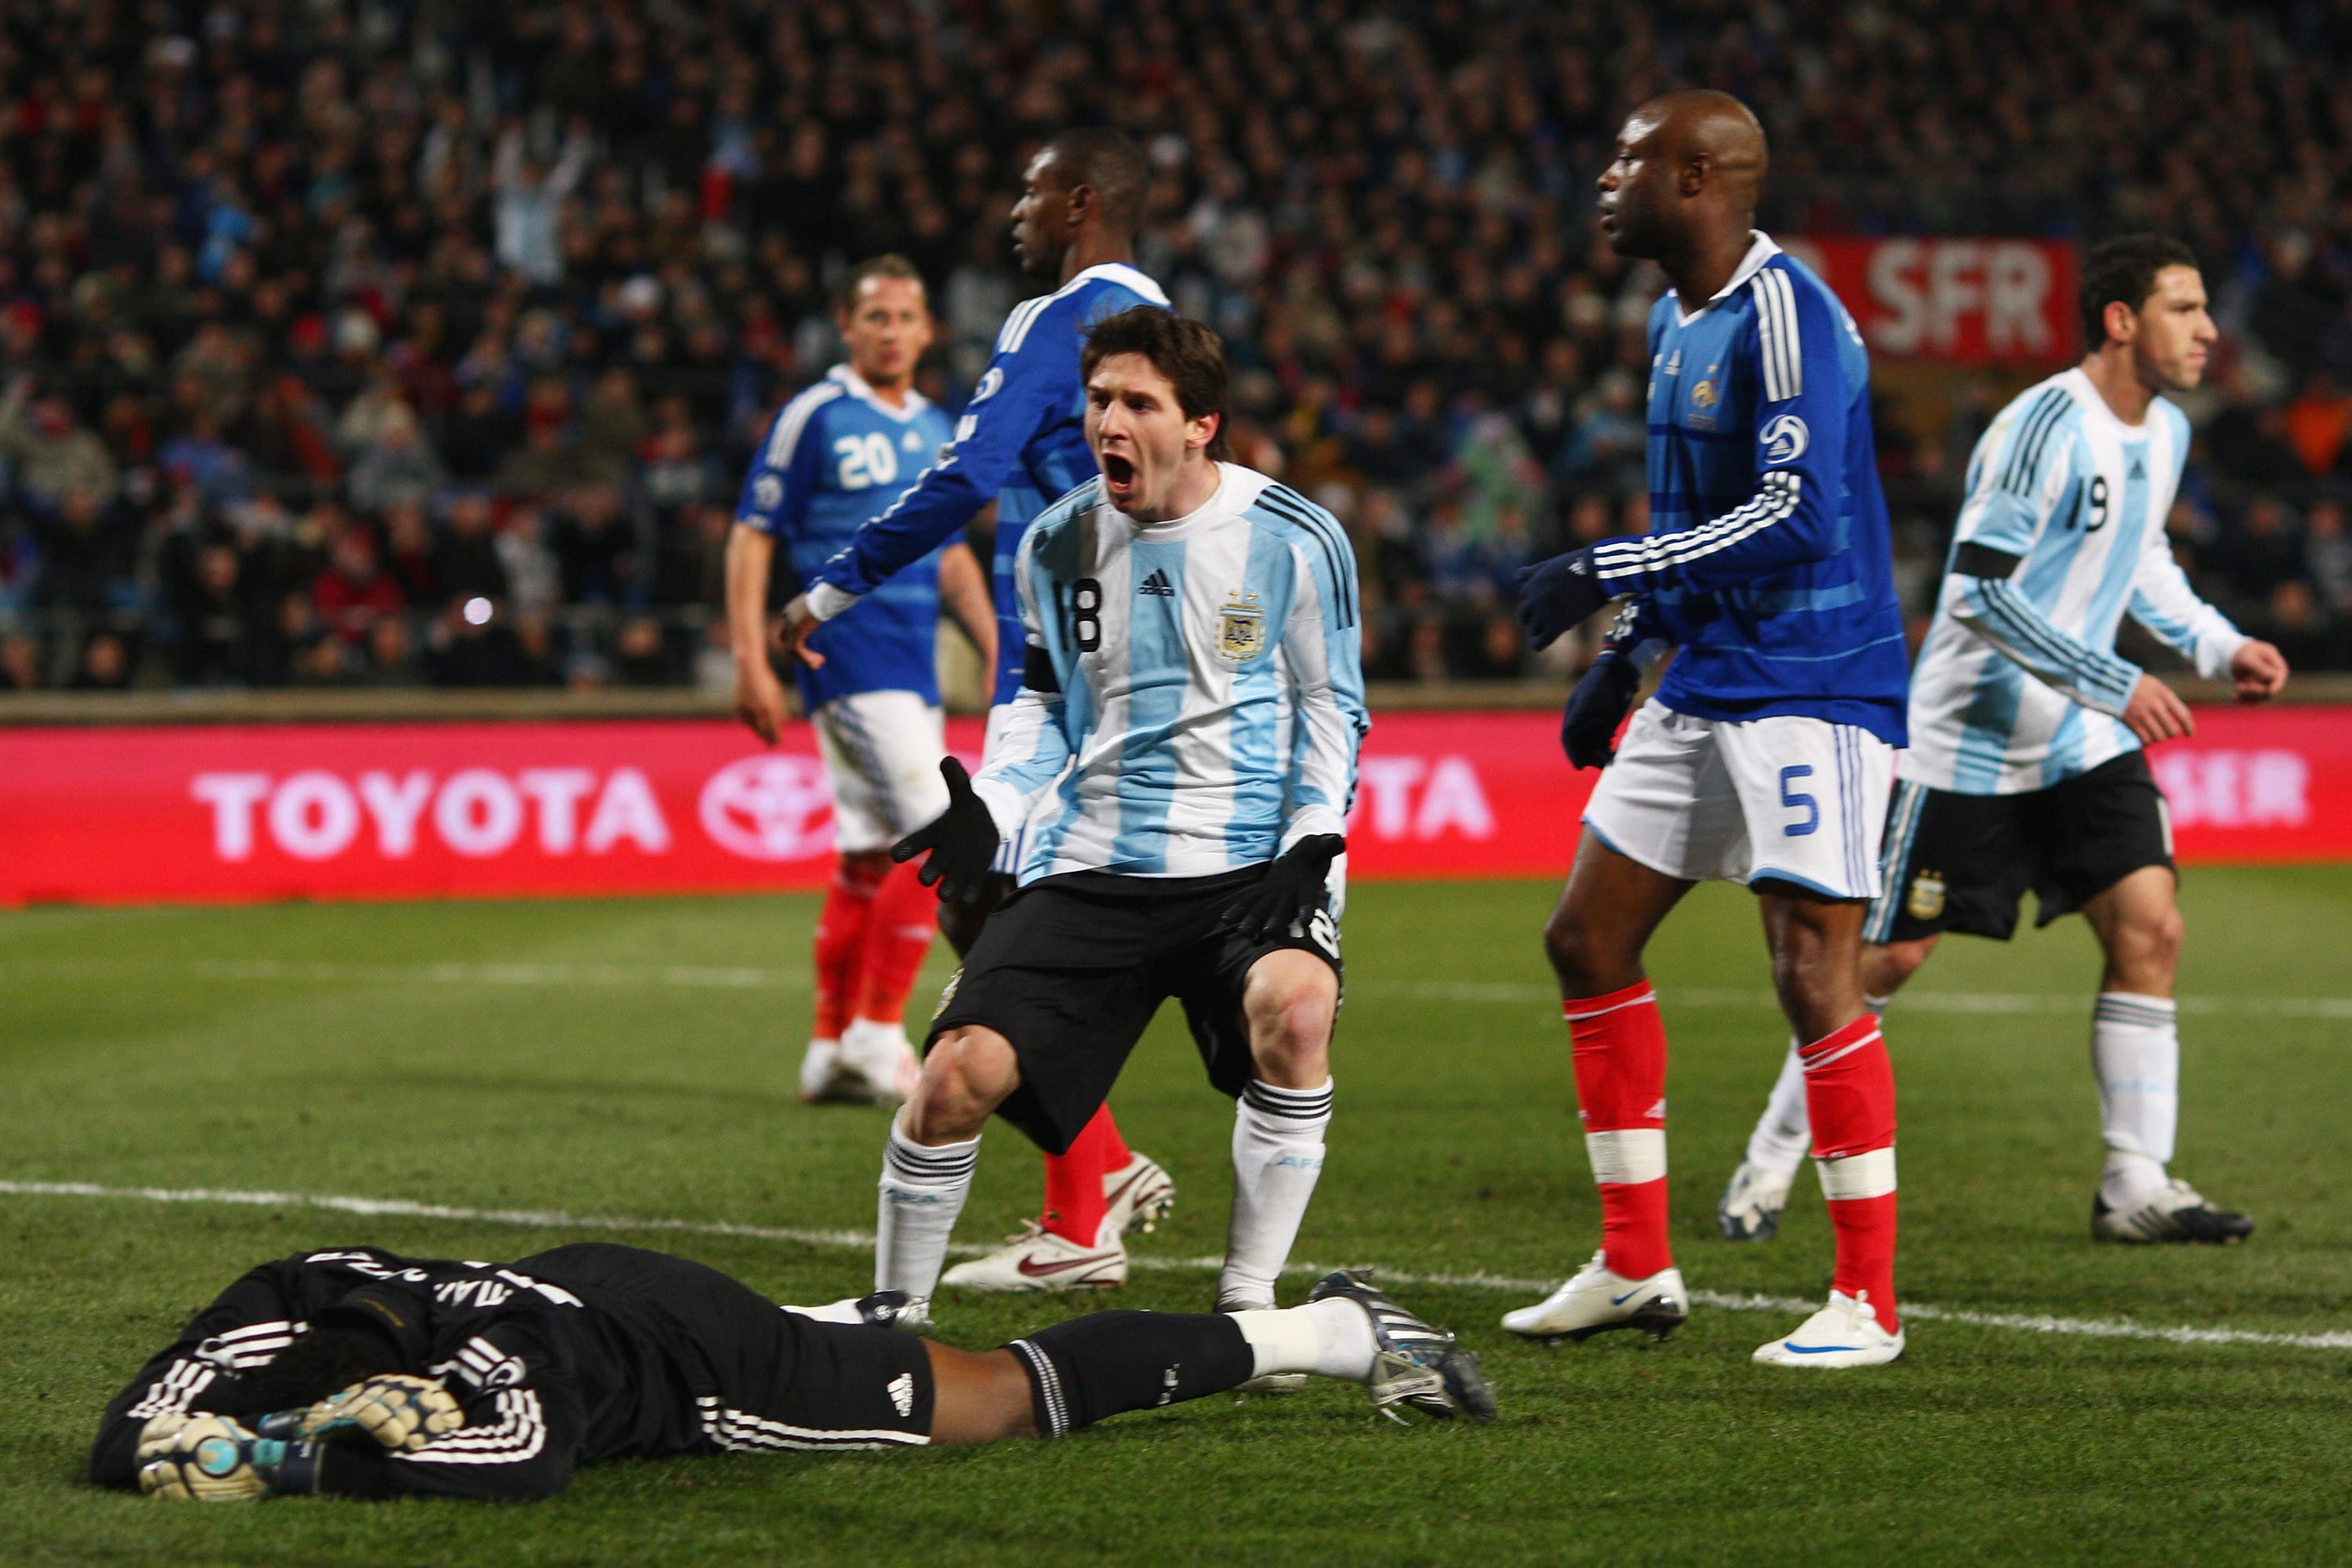 ליאונל מסי שחקן נבחרת ארגנטינה חוגג שער מול נבחרת צרפת, פברואר 2009